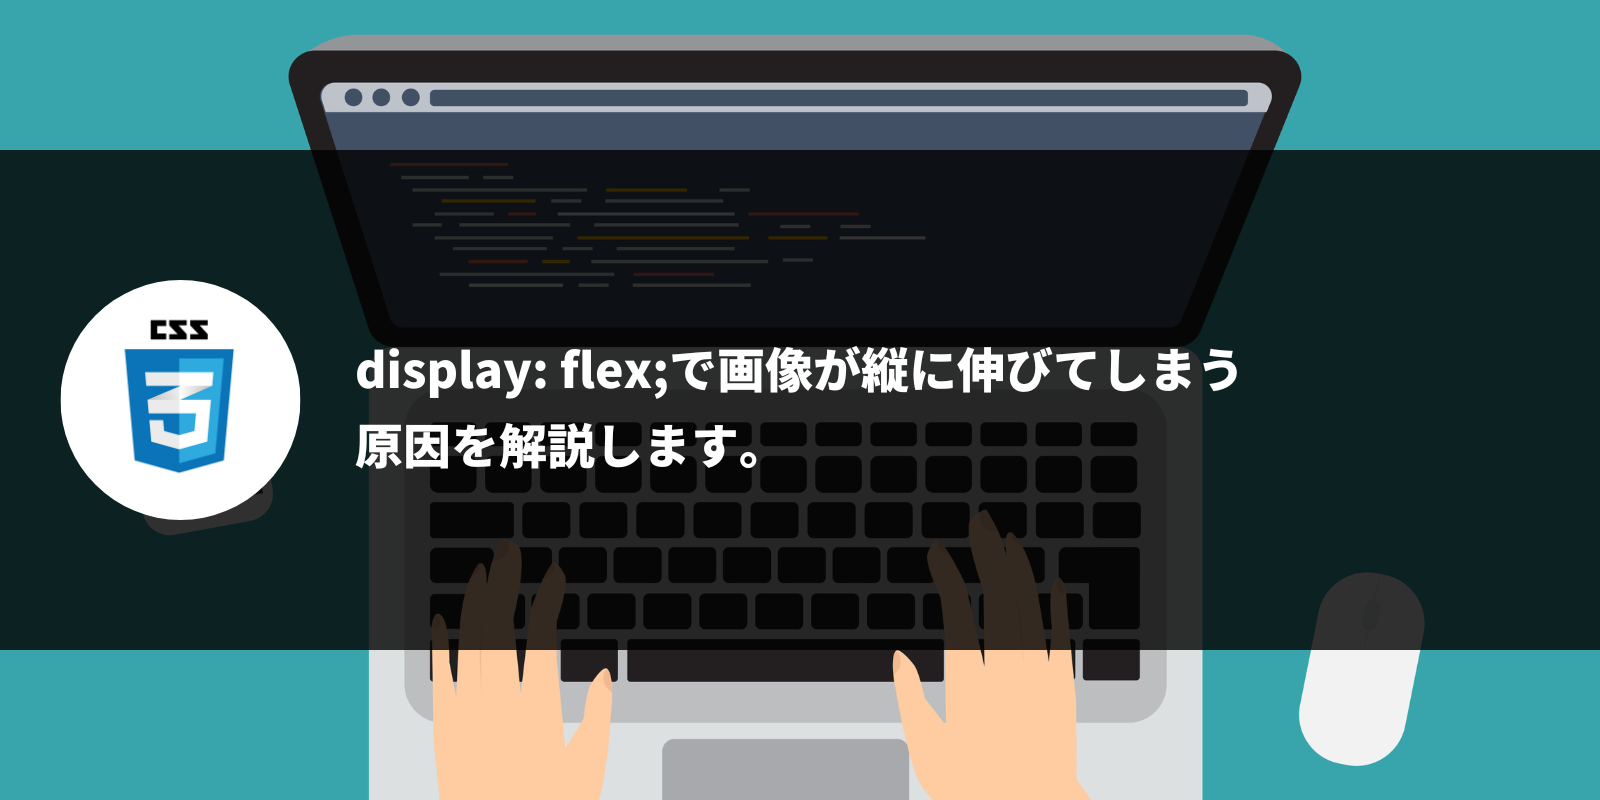 display: flex;で画像が縦に伸びてしまう 原因を解説します。